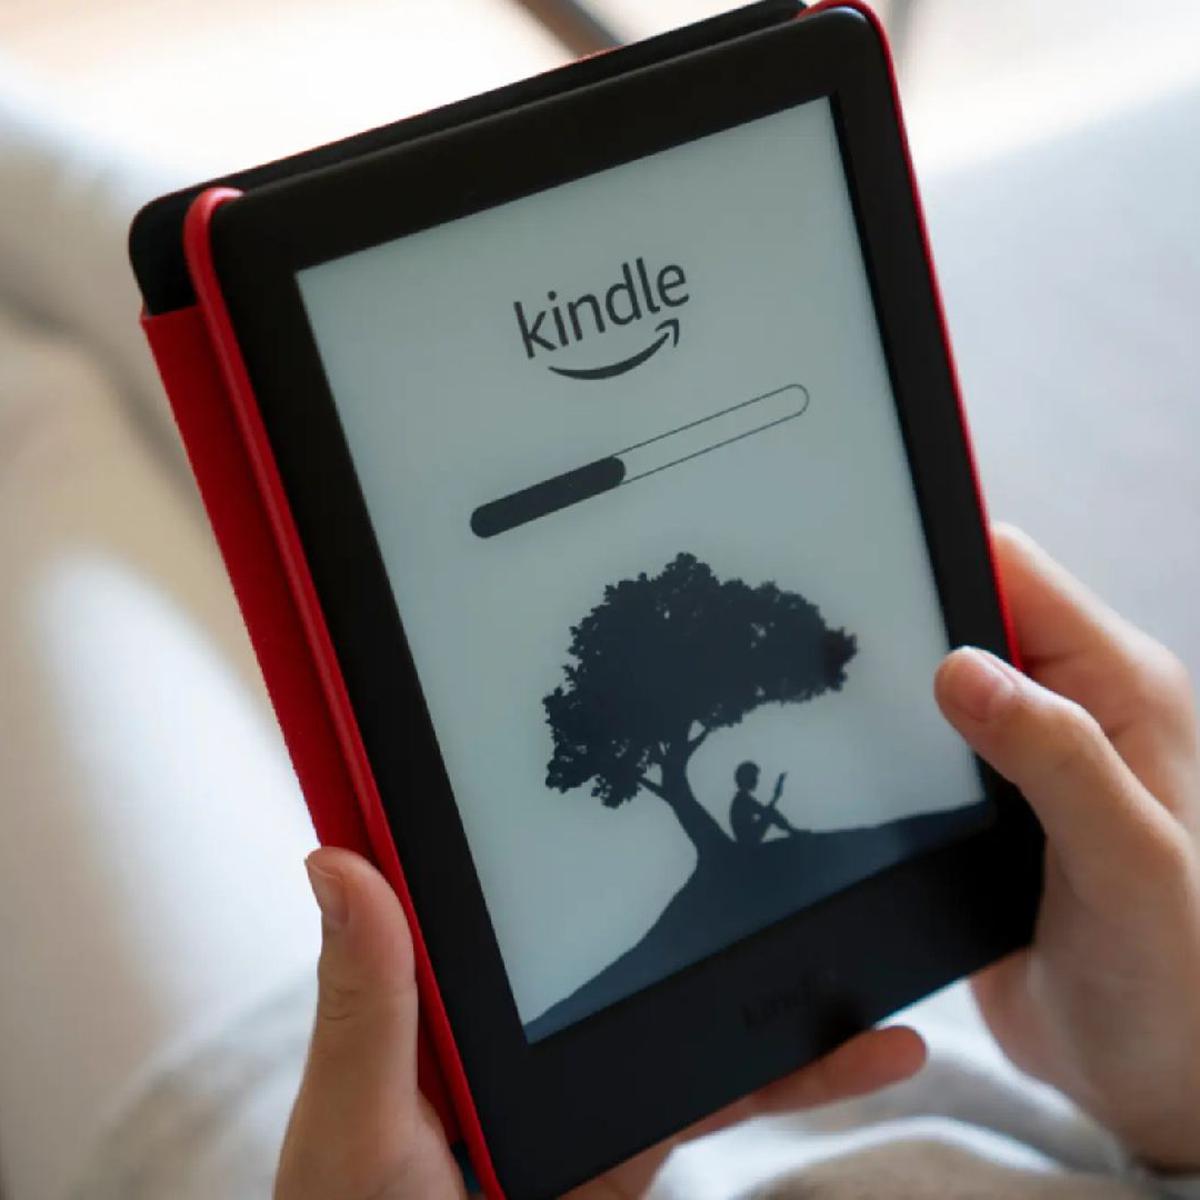 iRiver lanza un lector de libros electrónicos con pantalla HD y acceso a la  librería Google eBookstore – Actualidad Editorial